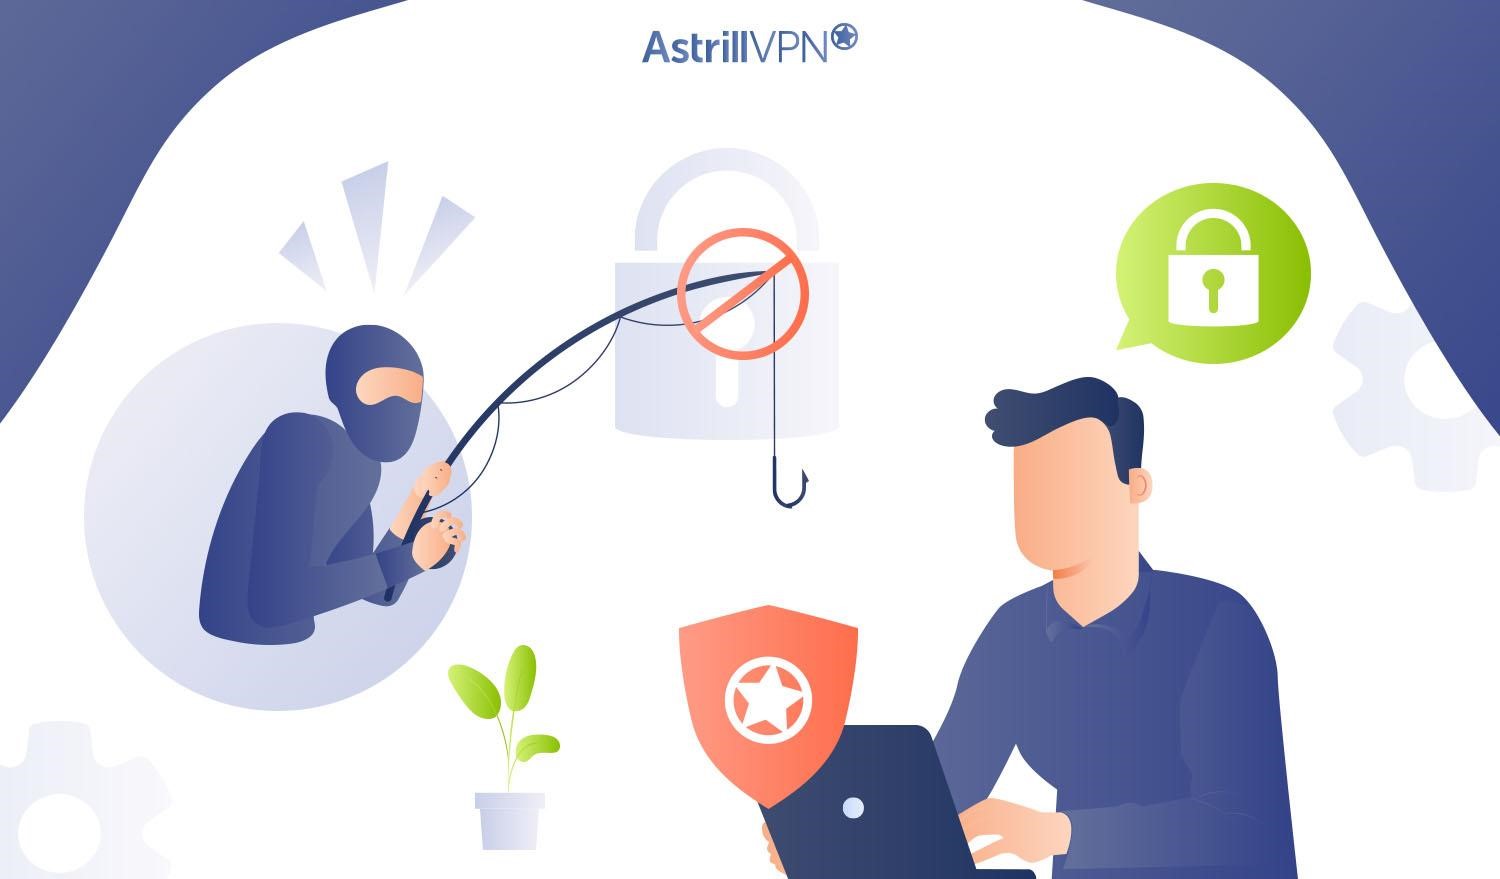 Why use AstrillVPN for avoiding phishing